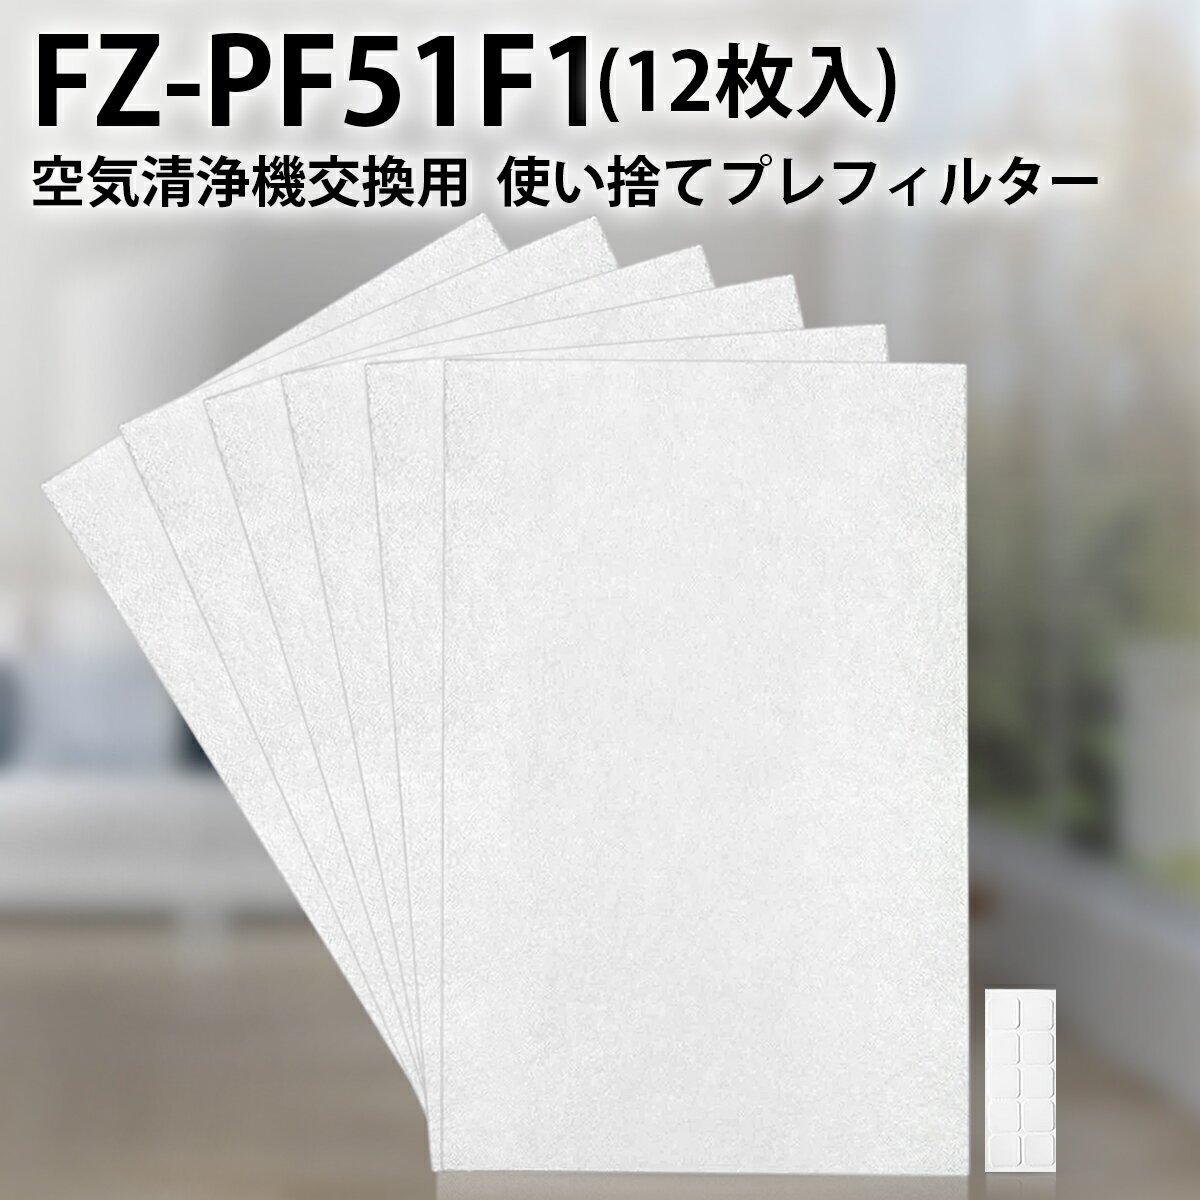 FZ-PF51F1 加湿空気清浄機 フィルター 使い捨てプレフィルター fz-pf51f1 シャープ 空気清浄機用 プレフィルター (12枚入り/互換品)